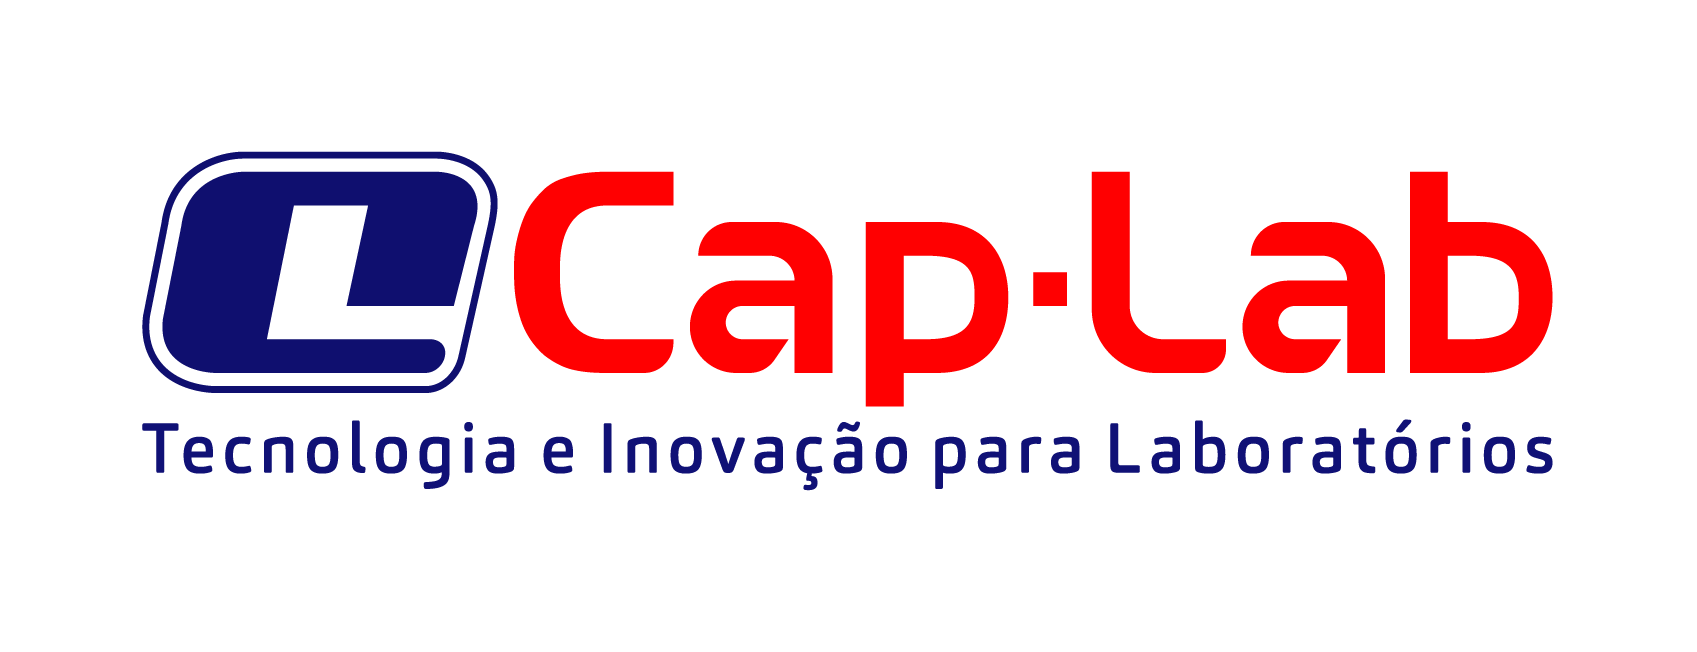 Cap-Lab Indústria e Comércio Ltda